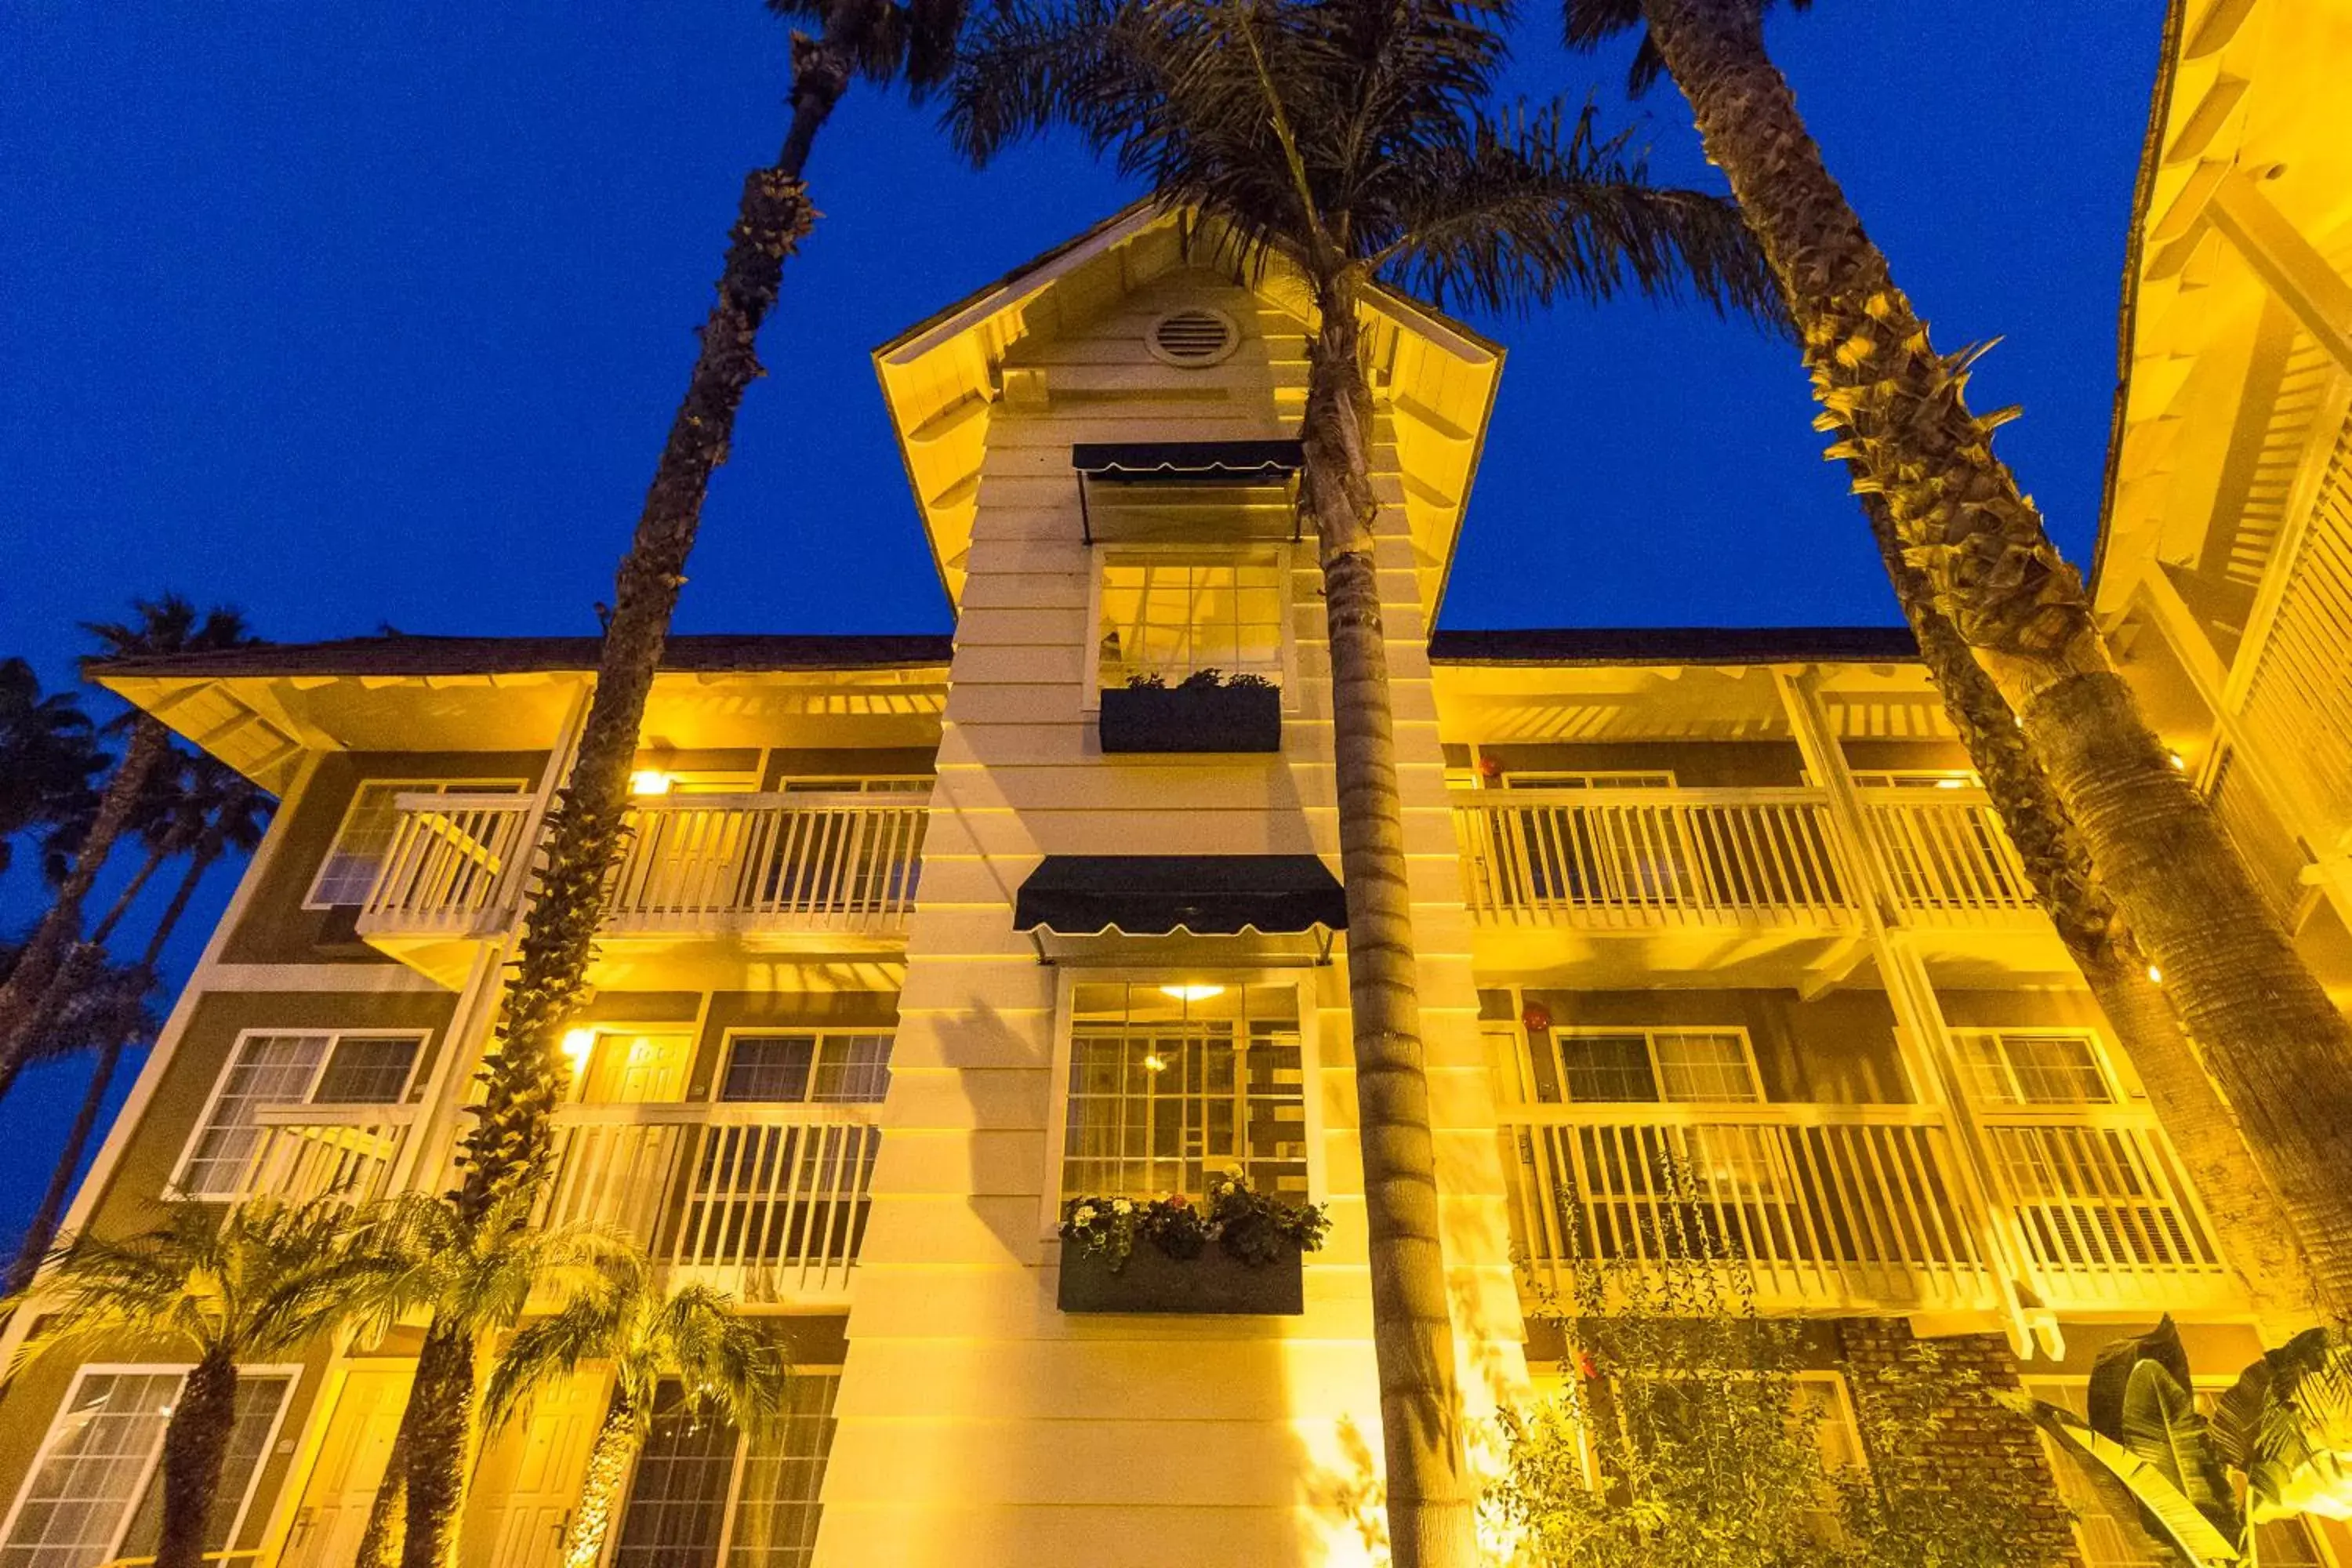 Property Building in Ramada by Wyndham Costa Mesa/Newport Beach